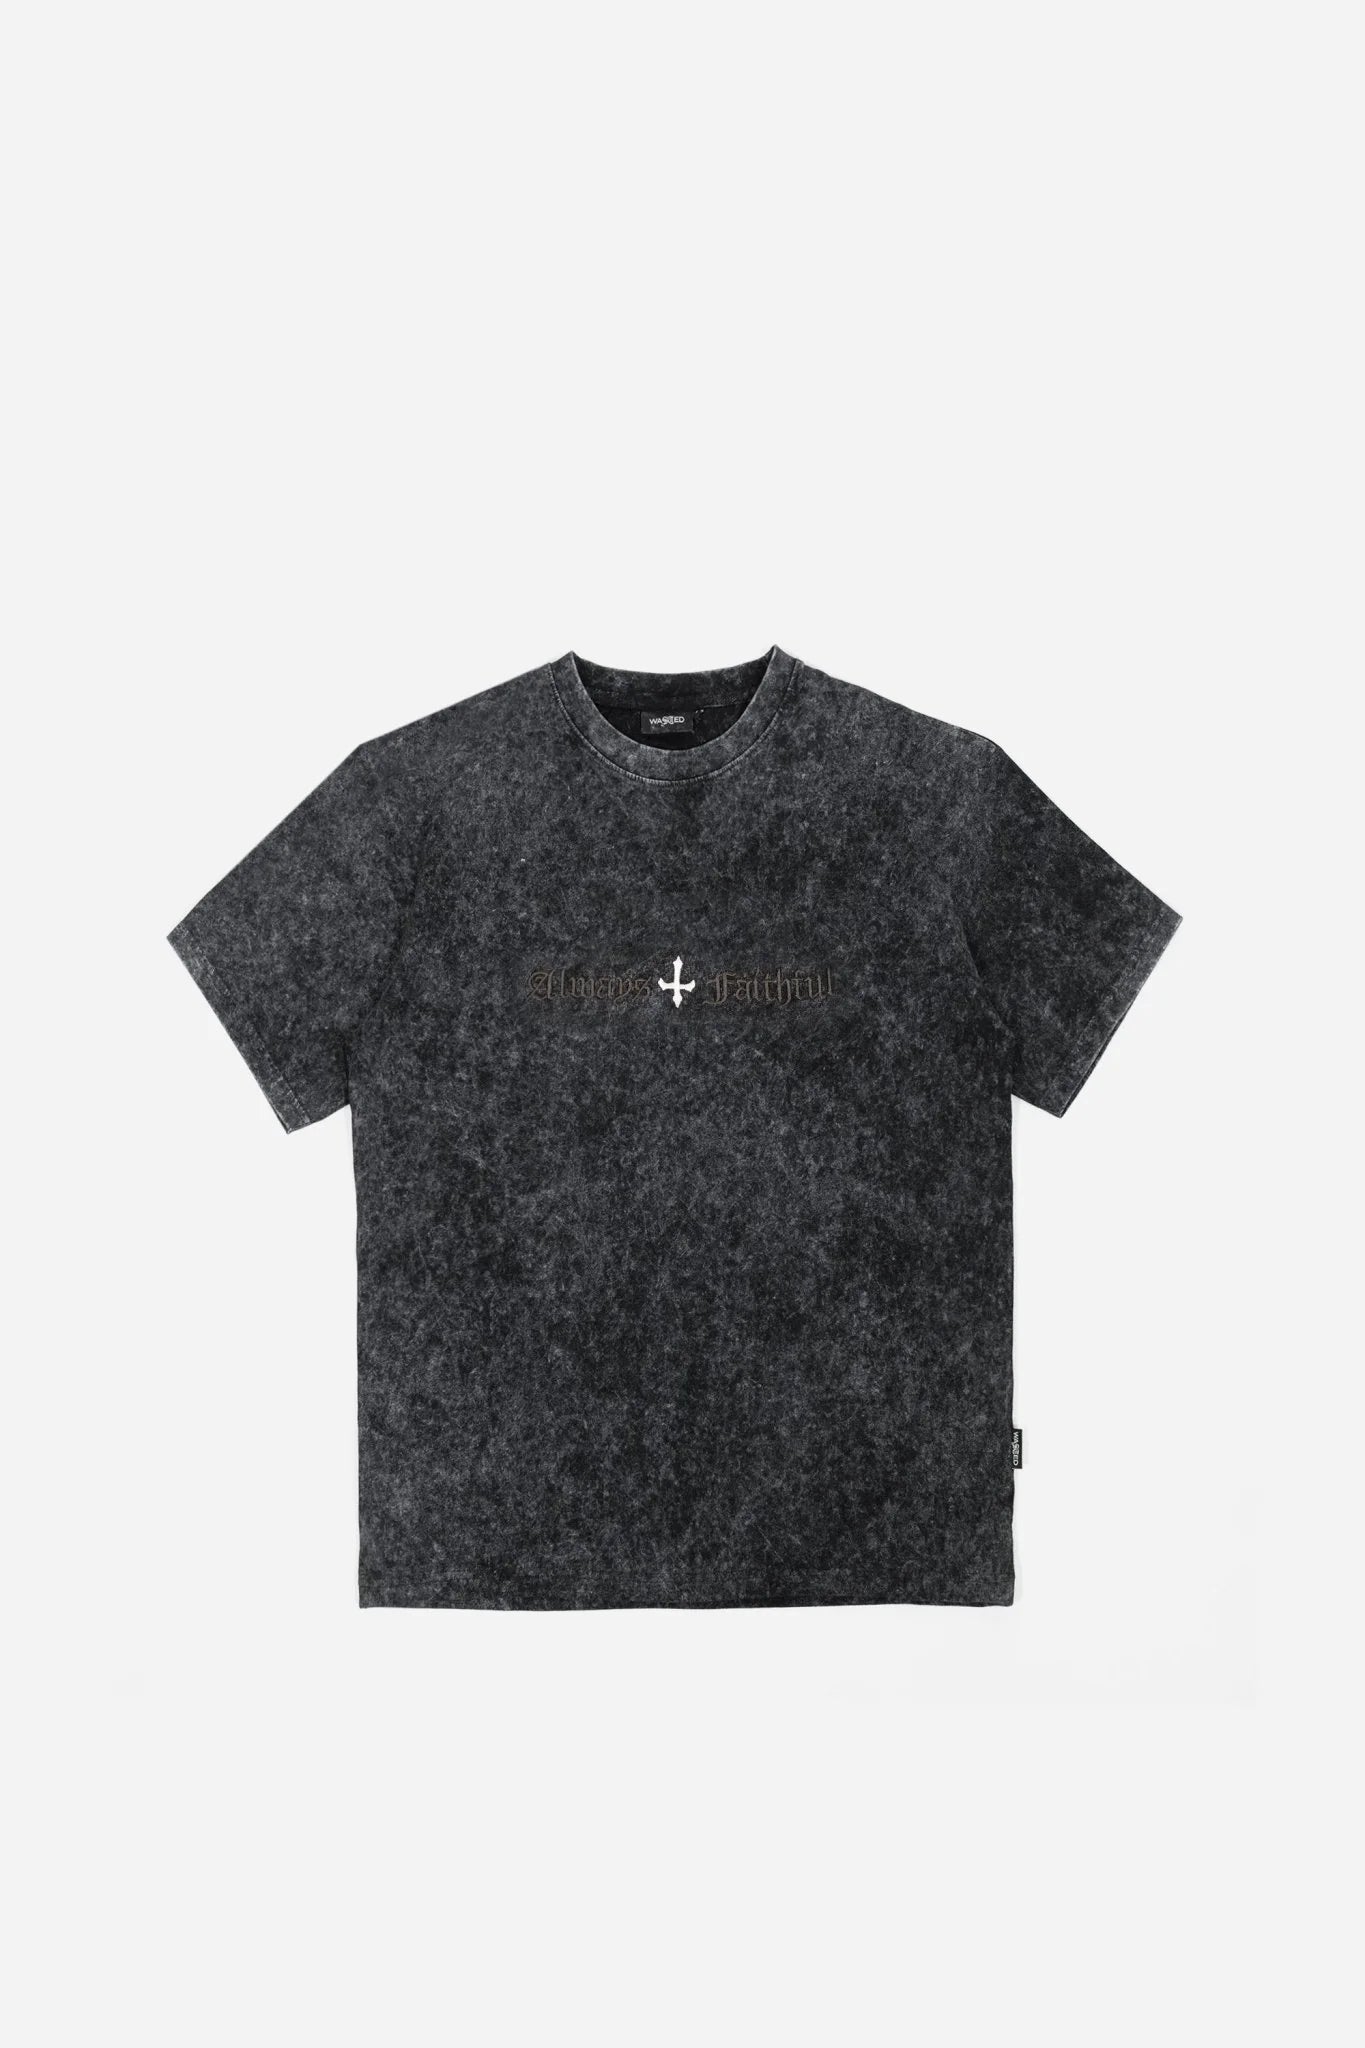 Chill Kingdom Sight T-Shirt (Faded Black)